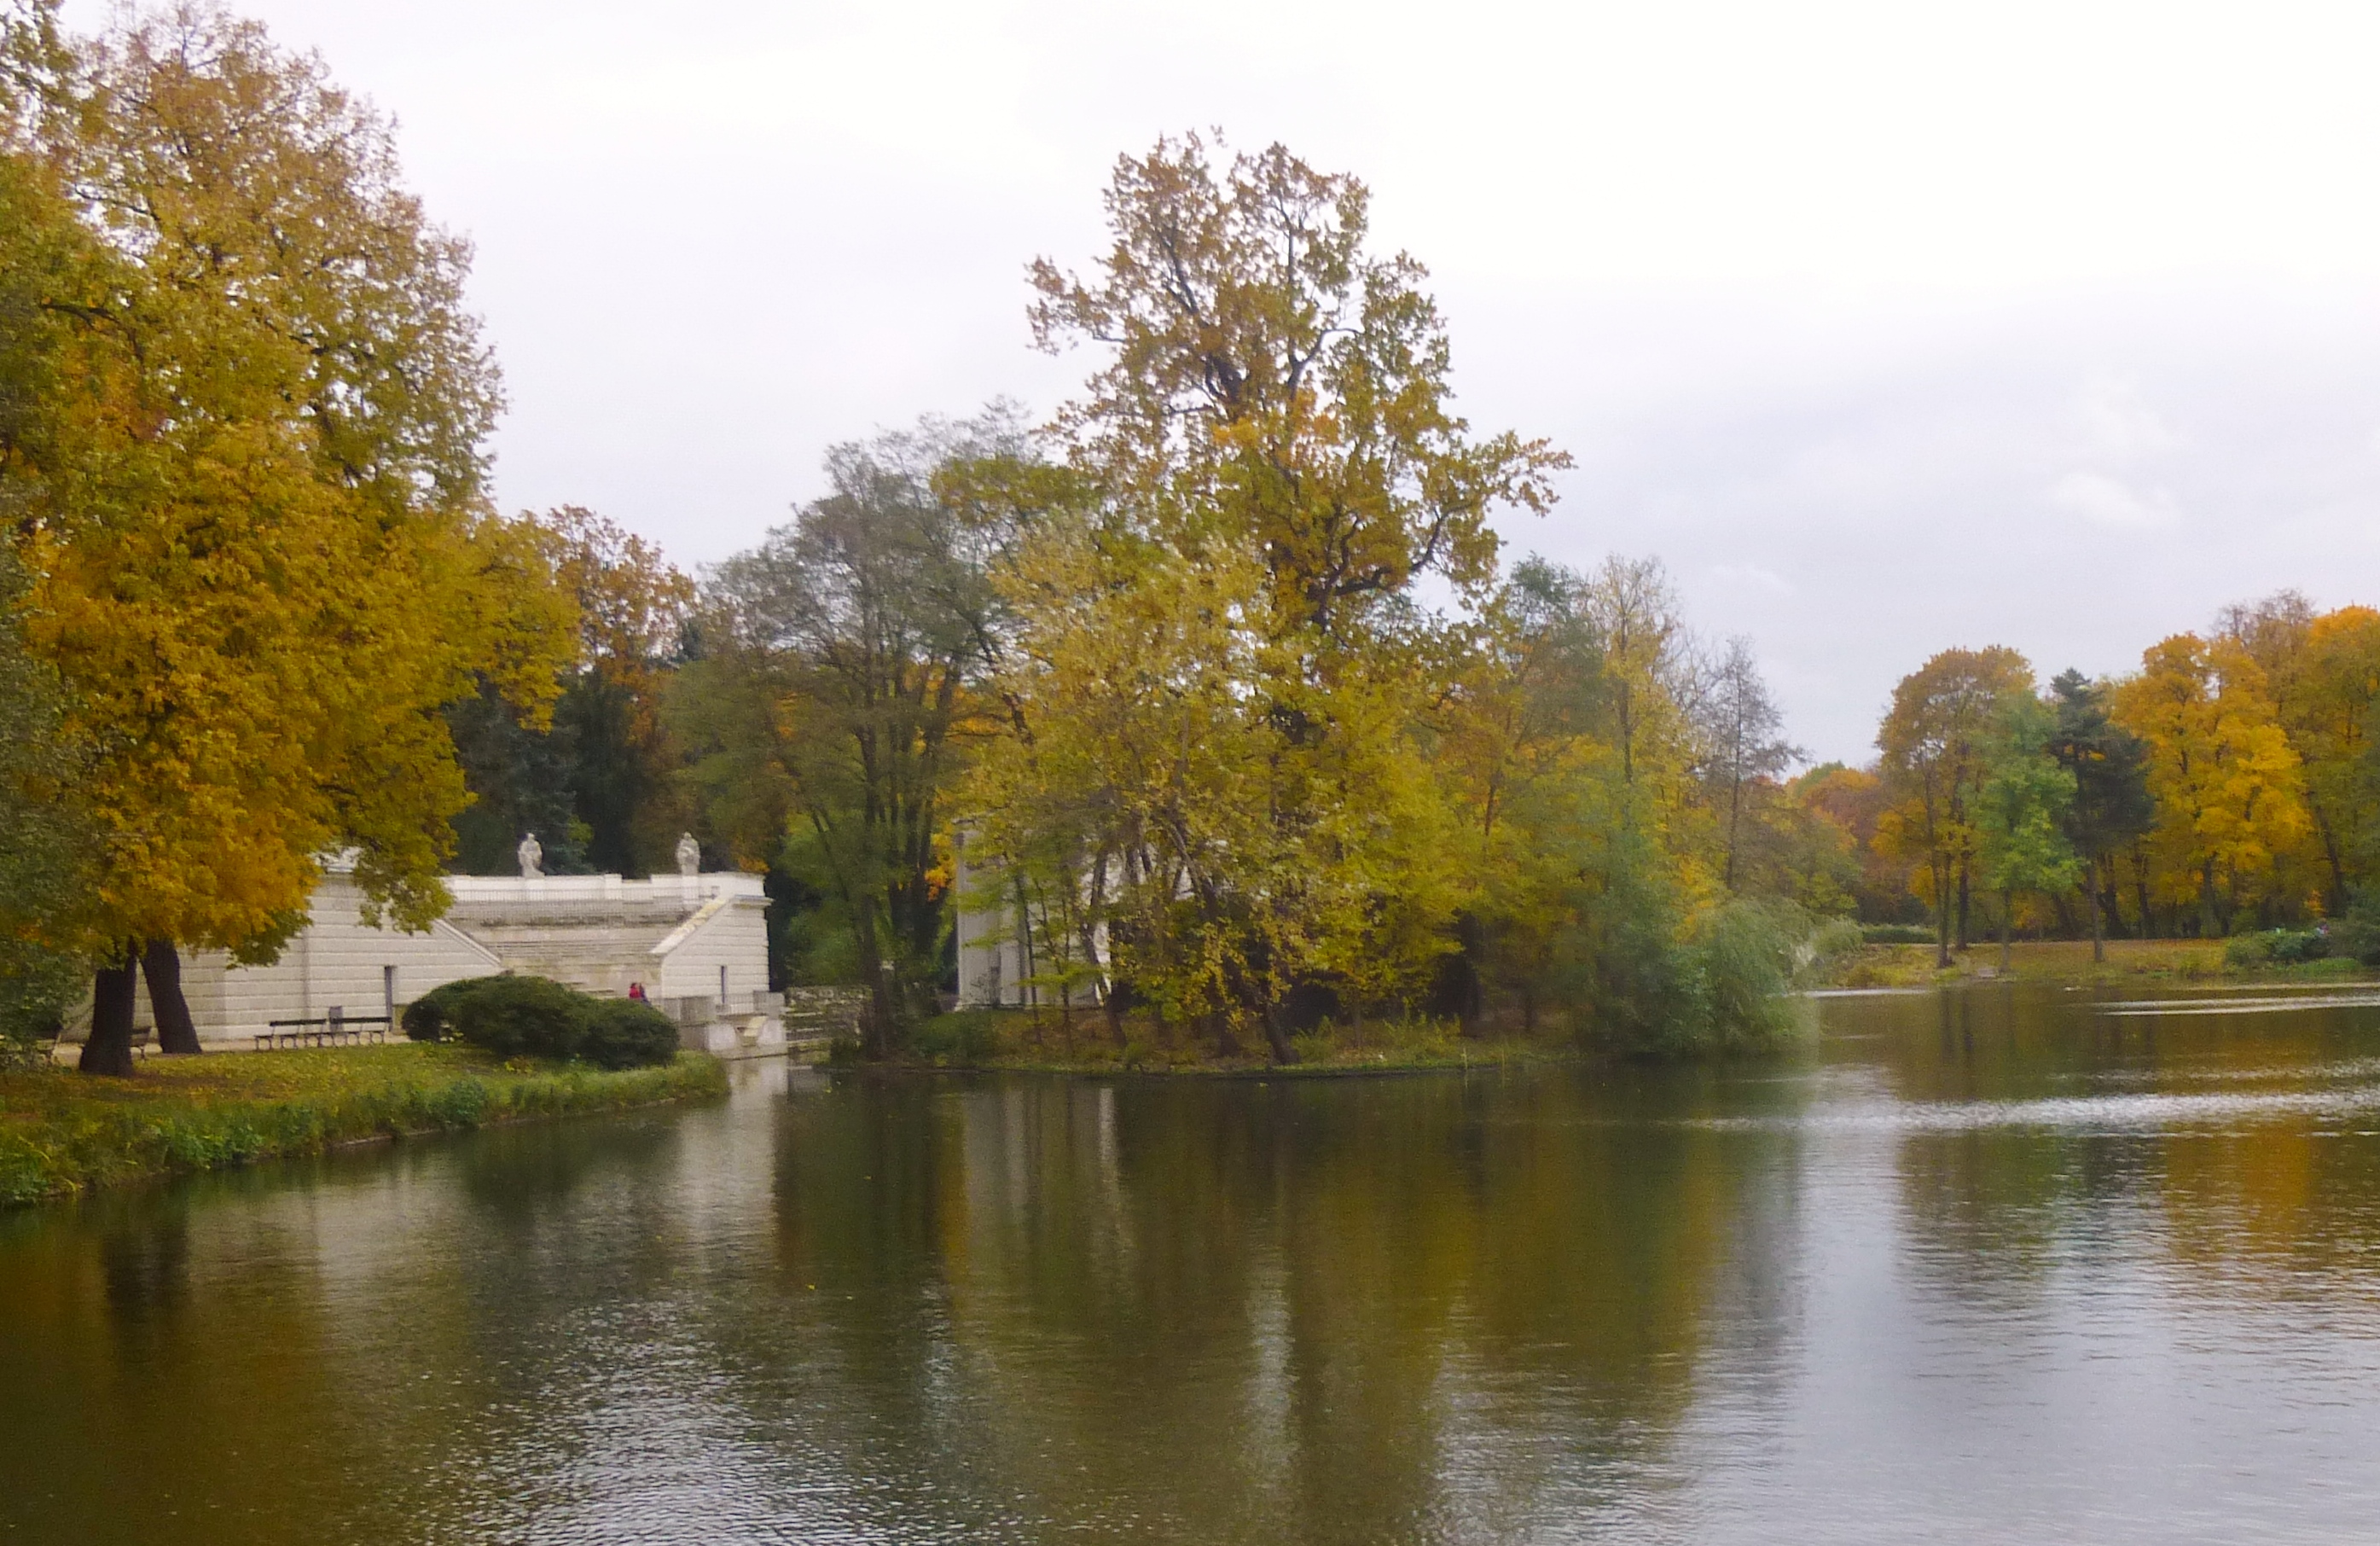 Lake-in-Warsaw-park. Lezienki Palace - Warsaw